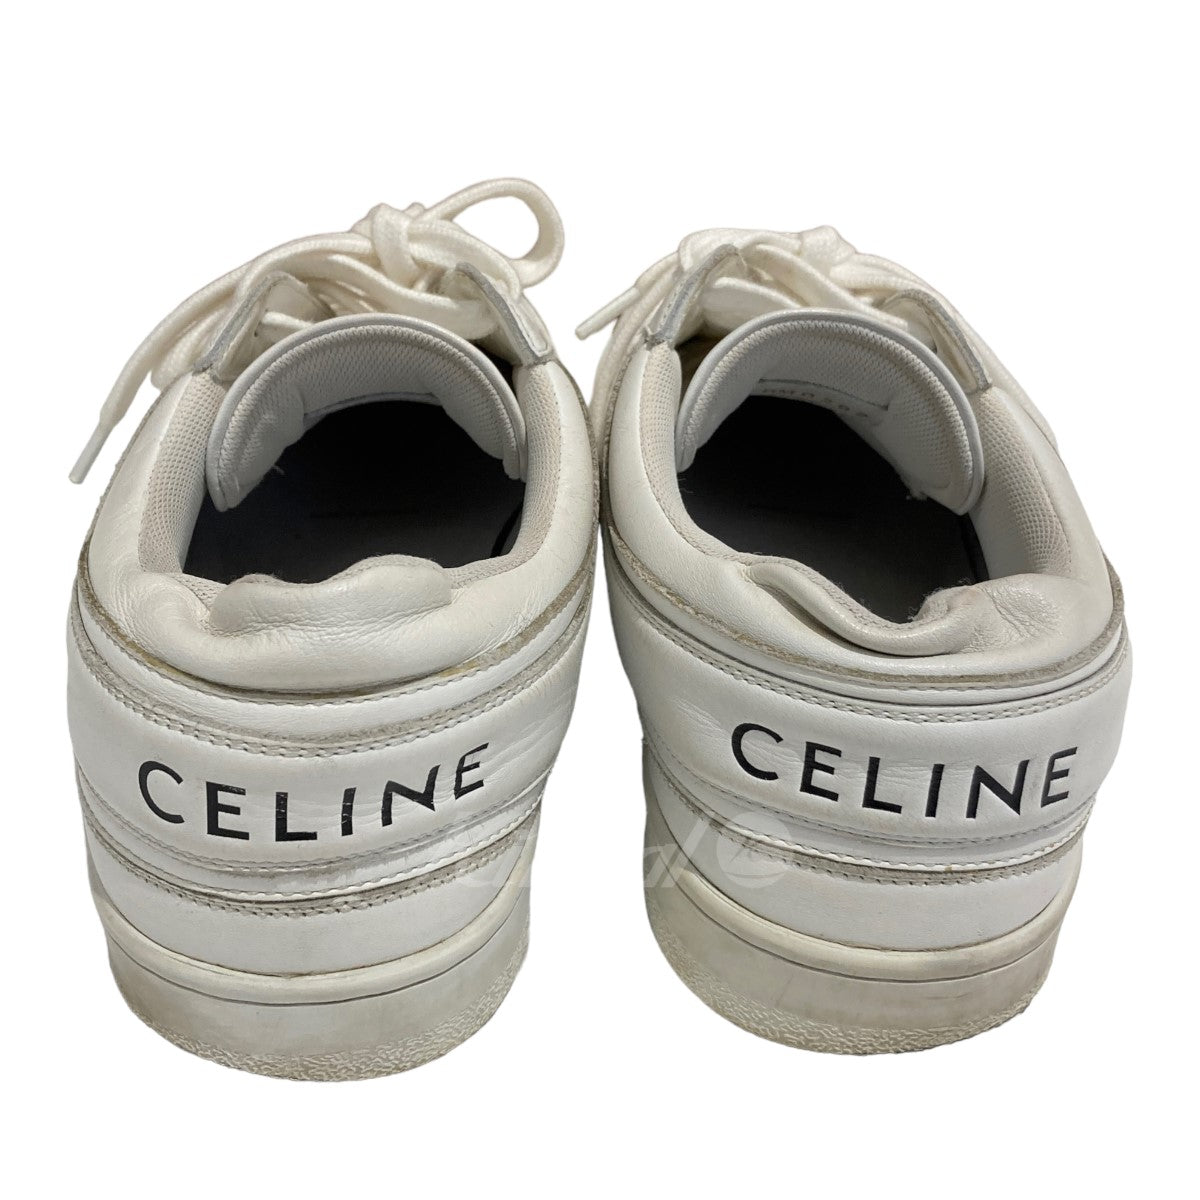 CELINE(セリーヌ) 「Block sneaker」 スニーカー RM0292 RM0292 